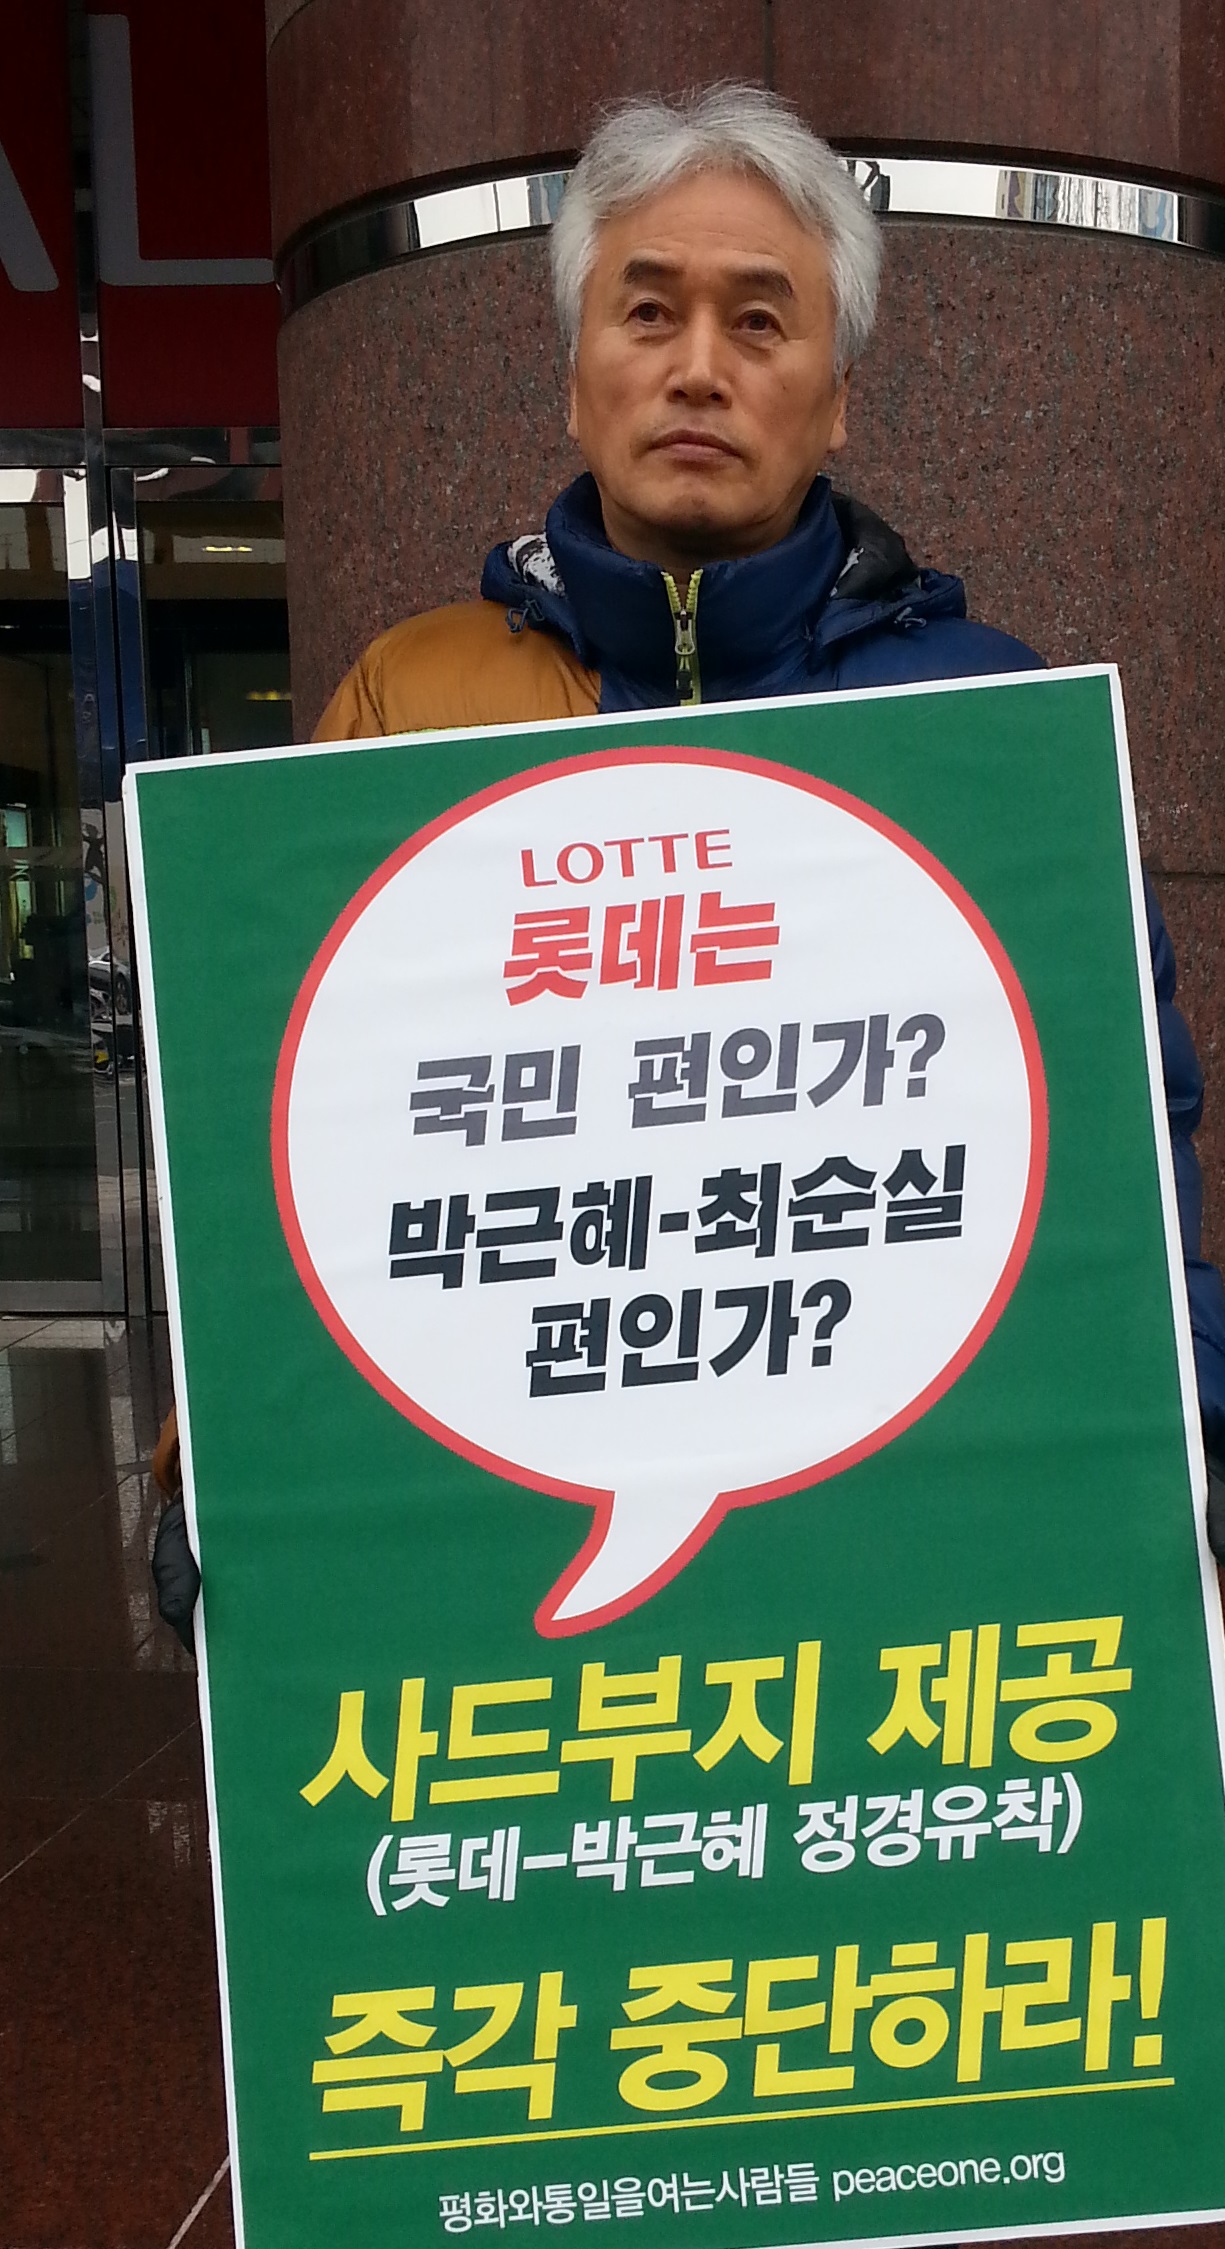 대전충청 평화와통일을여는사람들 유병규 공통대표가 12일 오후 1시 대전롯데백화점 앞에서 사드 부지 제공 중단을 촉구하는 1인 릴레이 시위를 벌이고 있다.